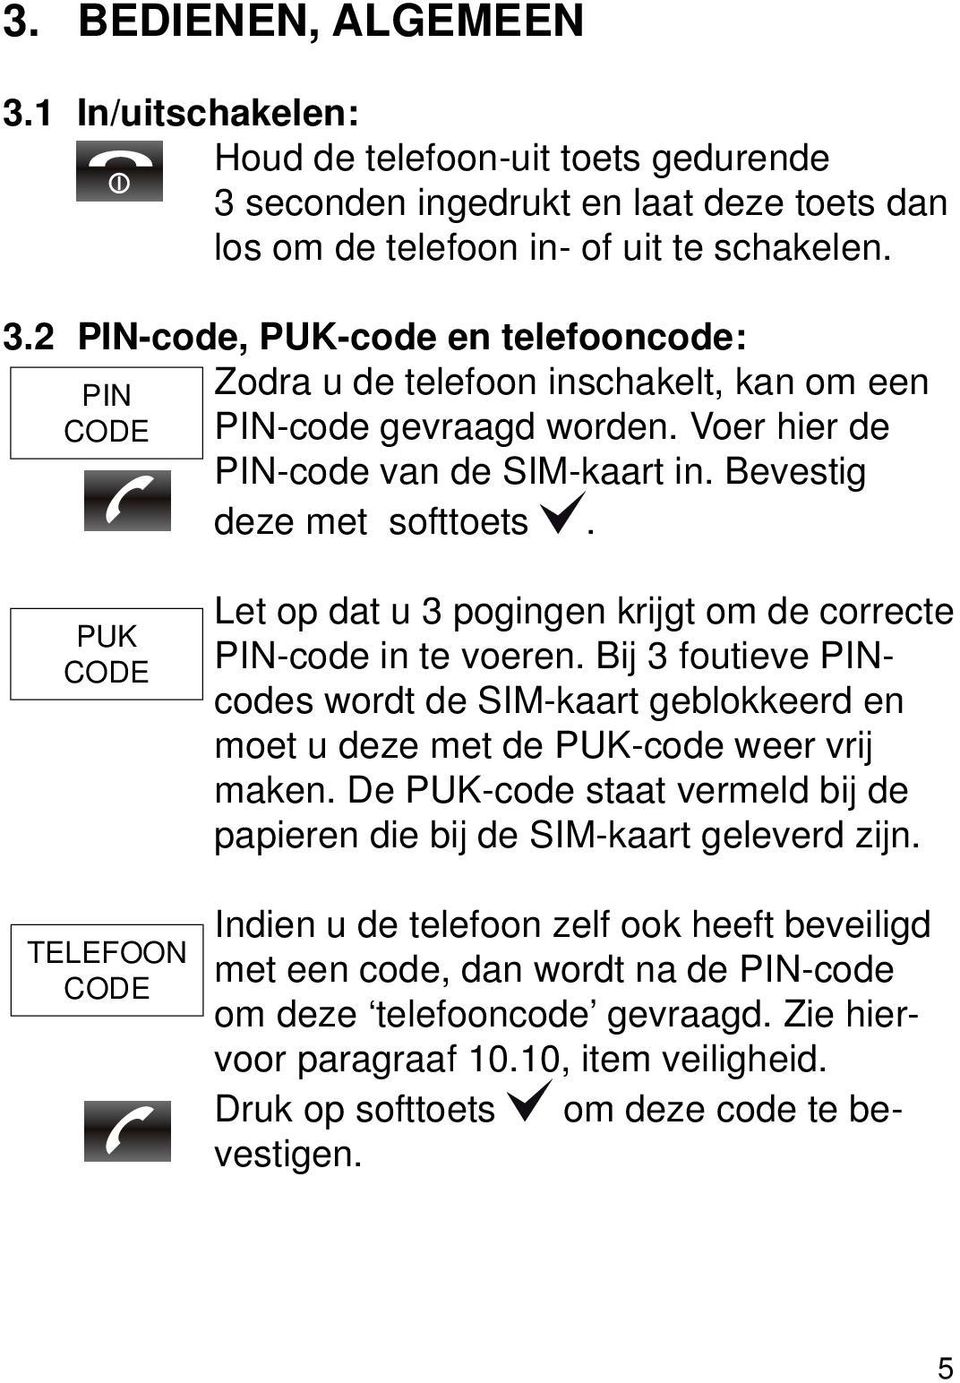 Bij 3 foutieve PINcodes wordt de SIM-kaart geblokkeerd en moet u deze met de PUK-code weer vrij maken. De PUK-code staat vermeld bij de papieren die bij de SIM-kaart geleverd zijn.